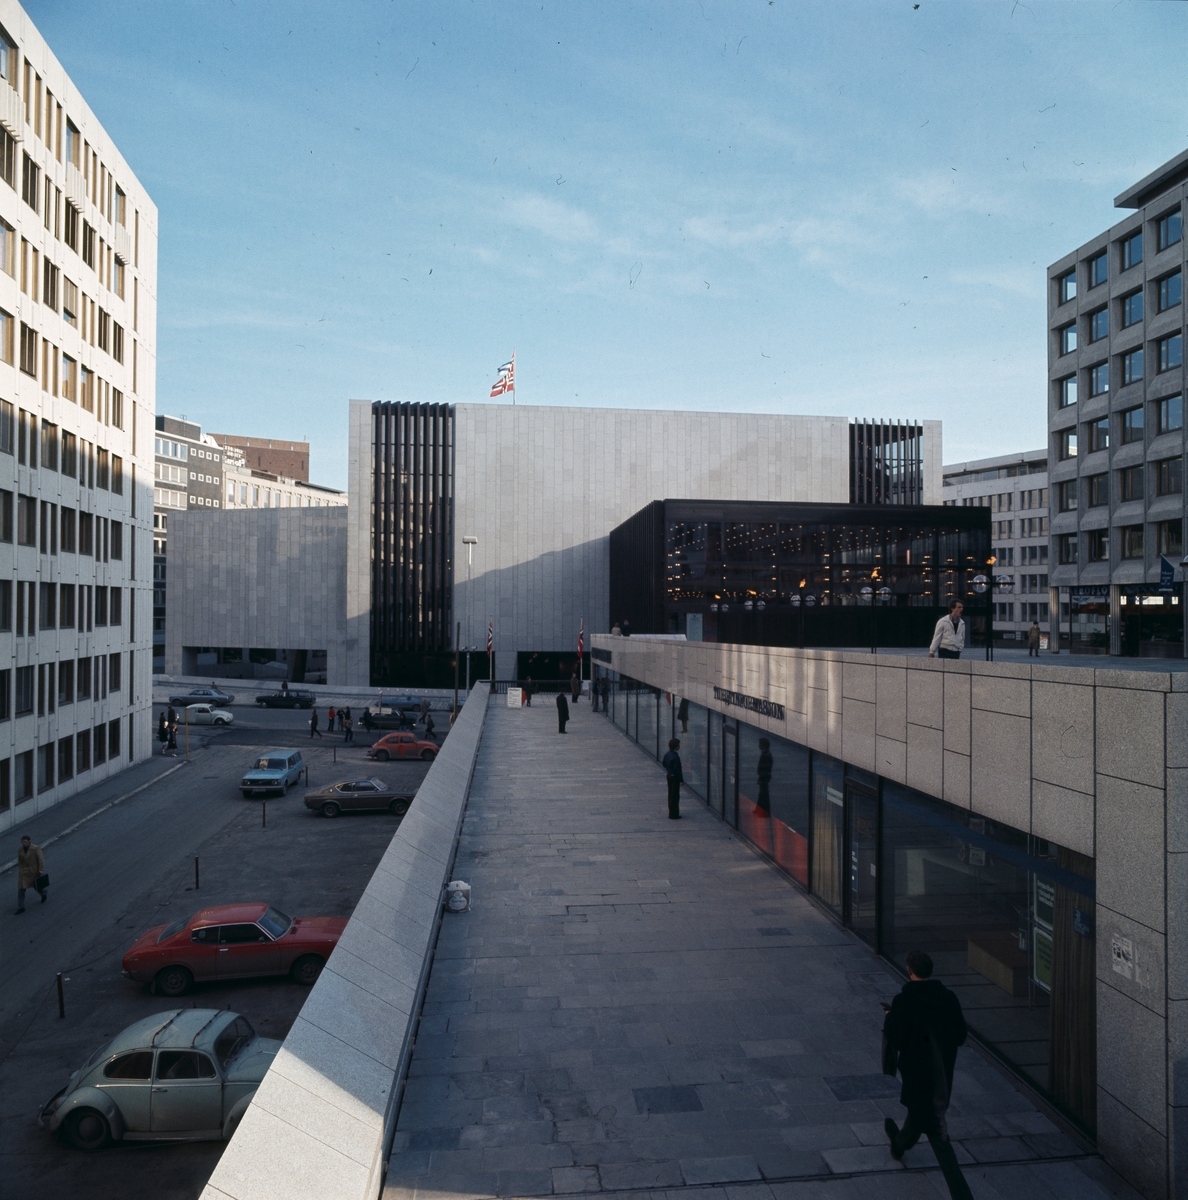 Oslo konserthus, tegnet av den svenske arkiteken Gösta Åbergh, fotografert i 1977. Konserthuset ble åpnet 22. mars 1977.